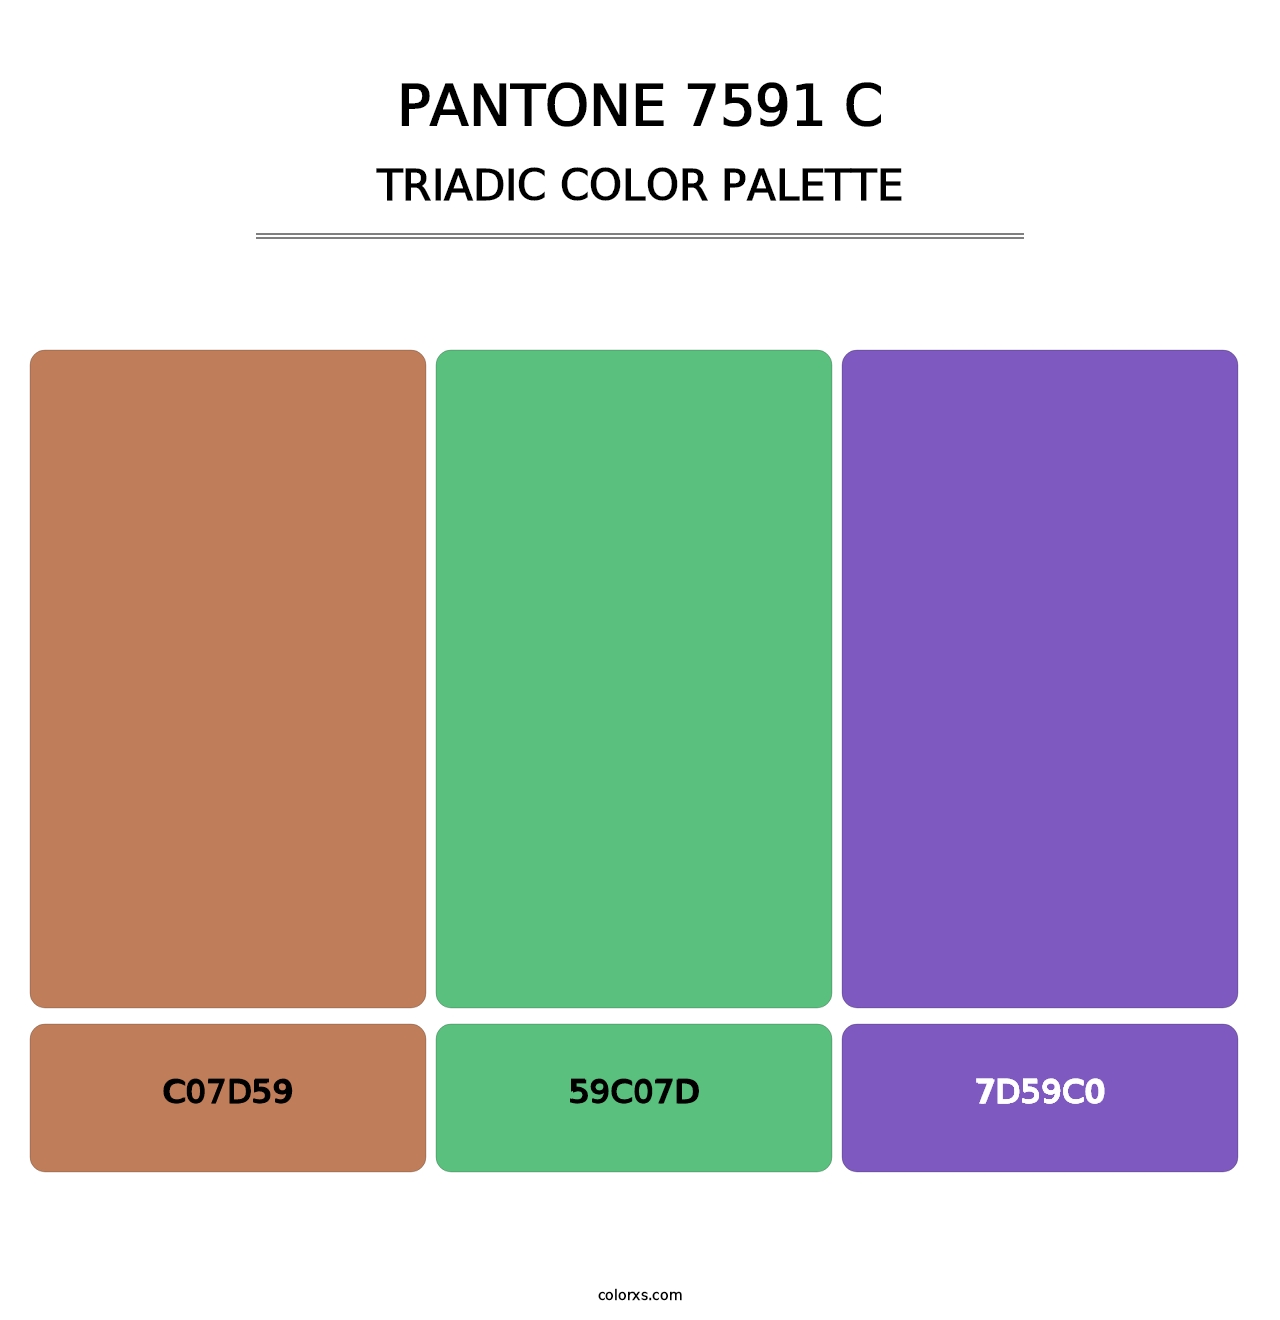 PANTONE 7591 C - Triadic Color Palette